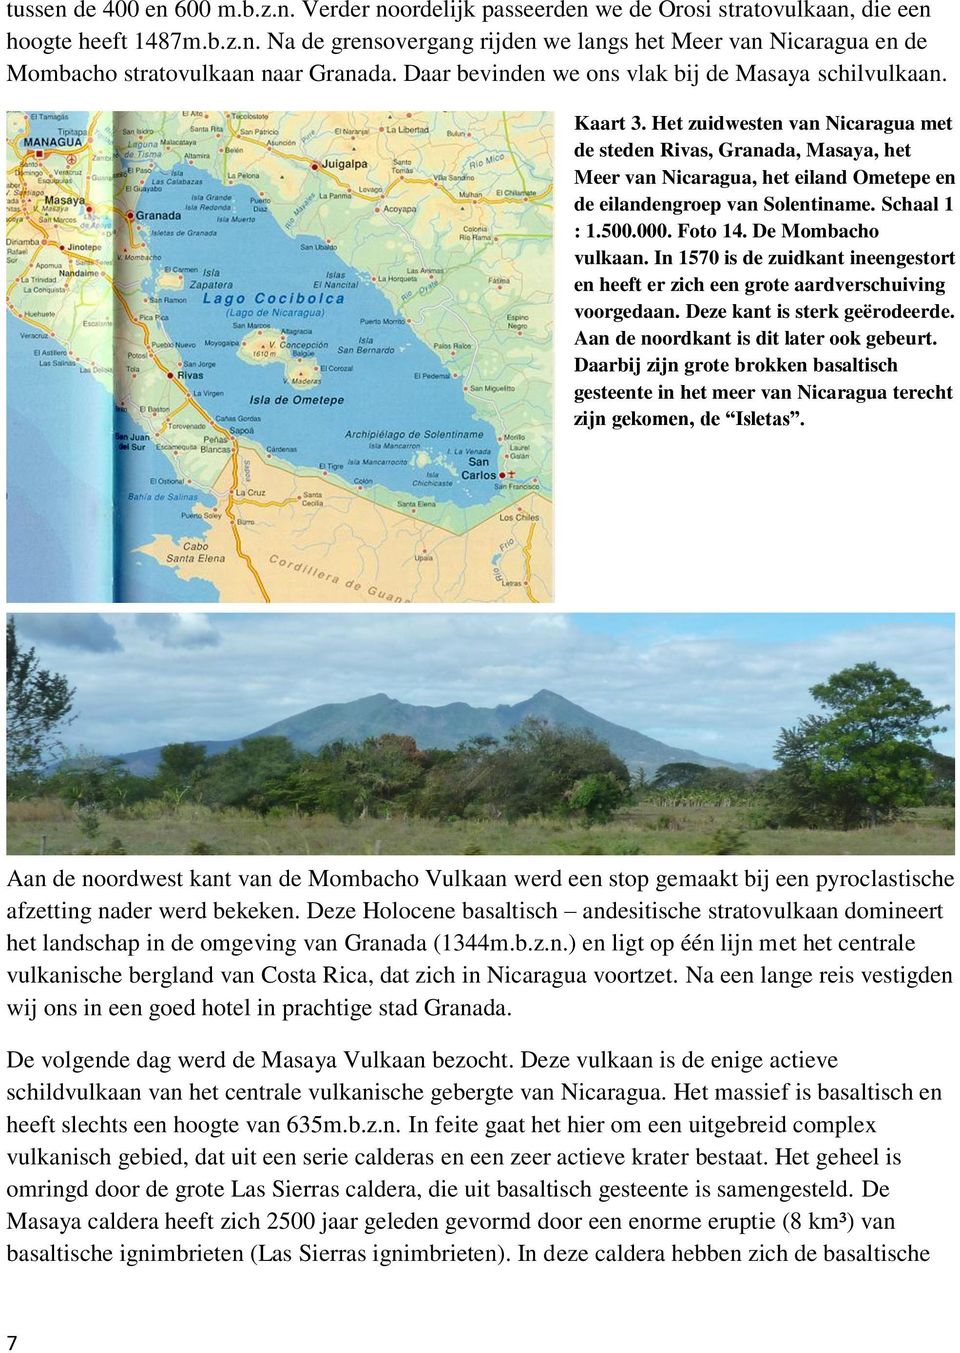 Het zuidwesten van Nicaragua met de steden Rivas, Granada, Masaya, het Meer van Nicaragua, het eiland Ometepe en de eilandengroep van Solentiname. Schaal 1 : 1.500.000. Foto 14. De Mombacho vulkaan.